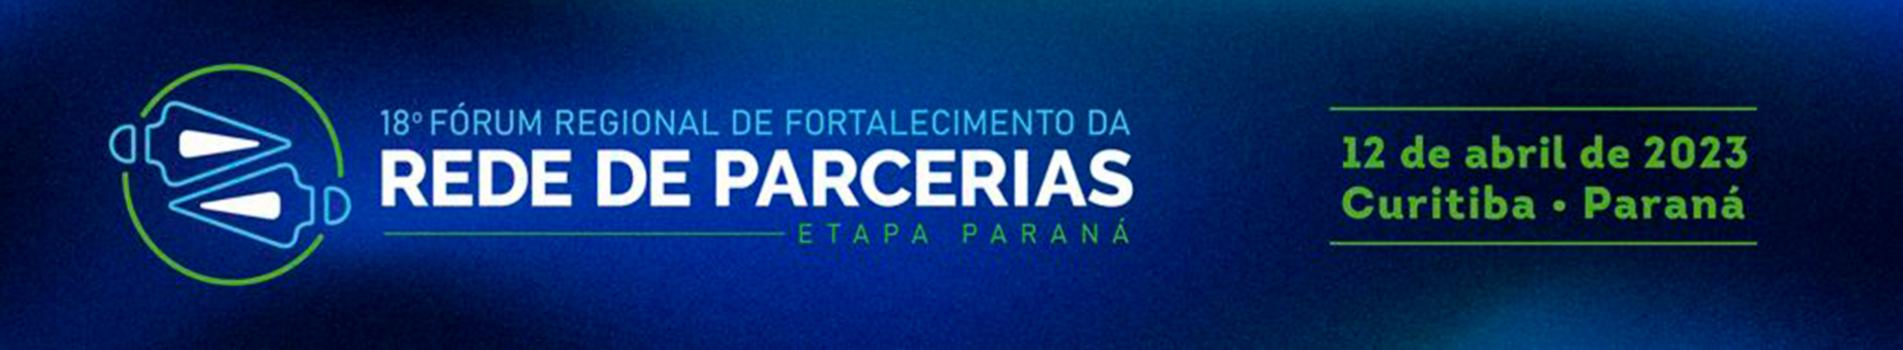 8º Fórum Regional de Fortalecimento da Rede de Parcerias – Etapa Paraná